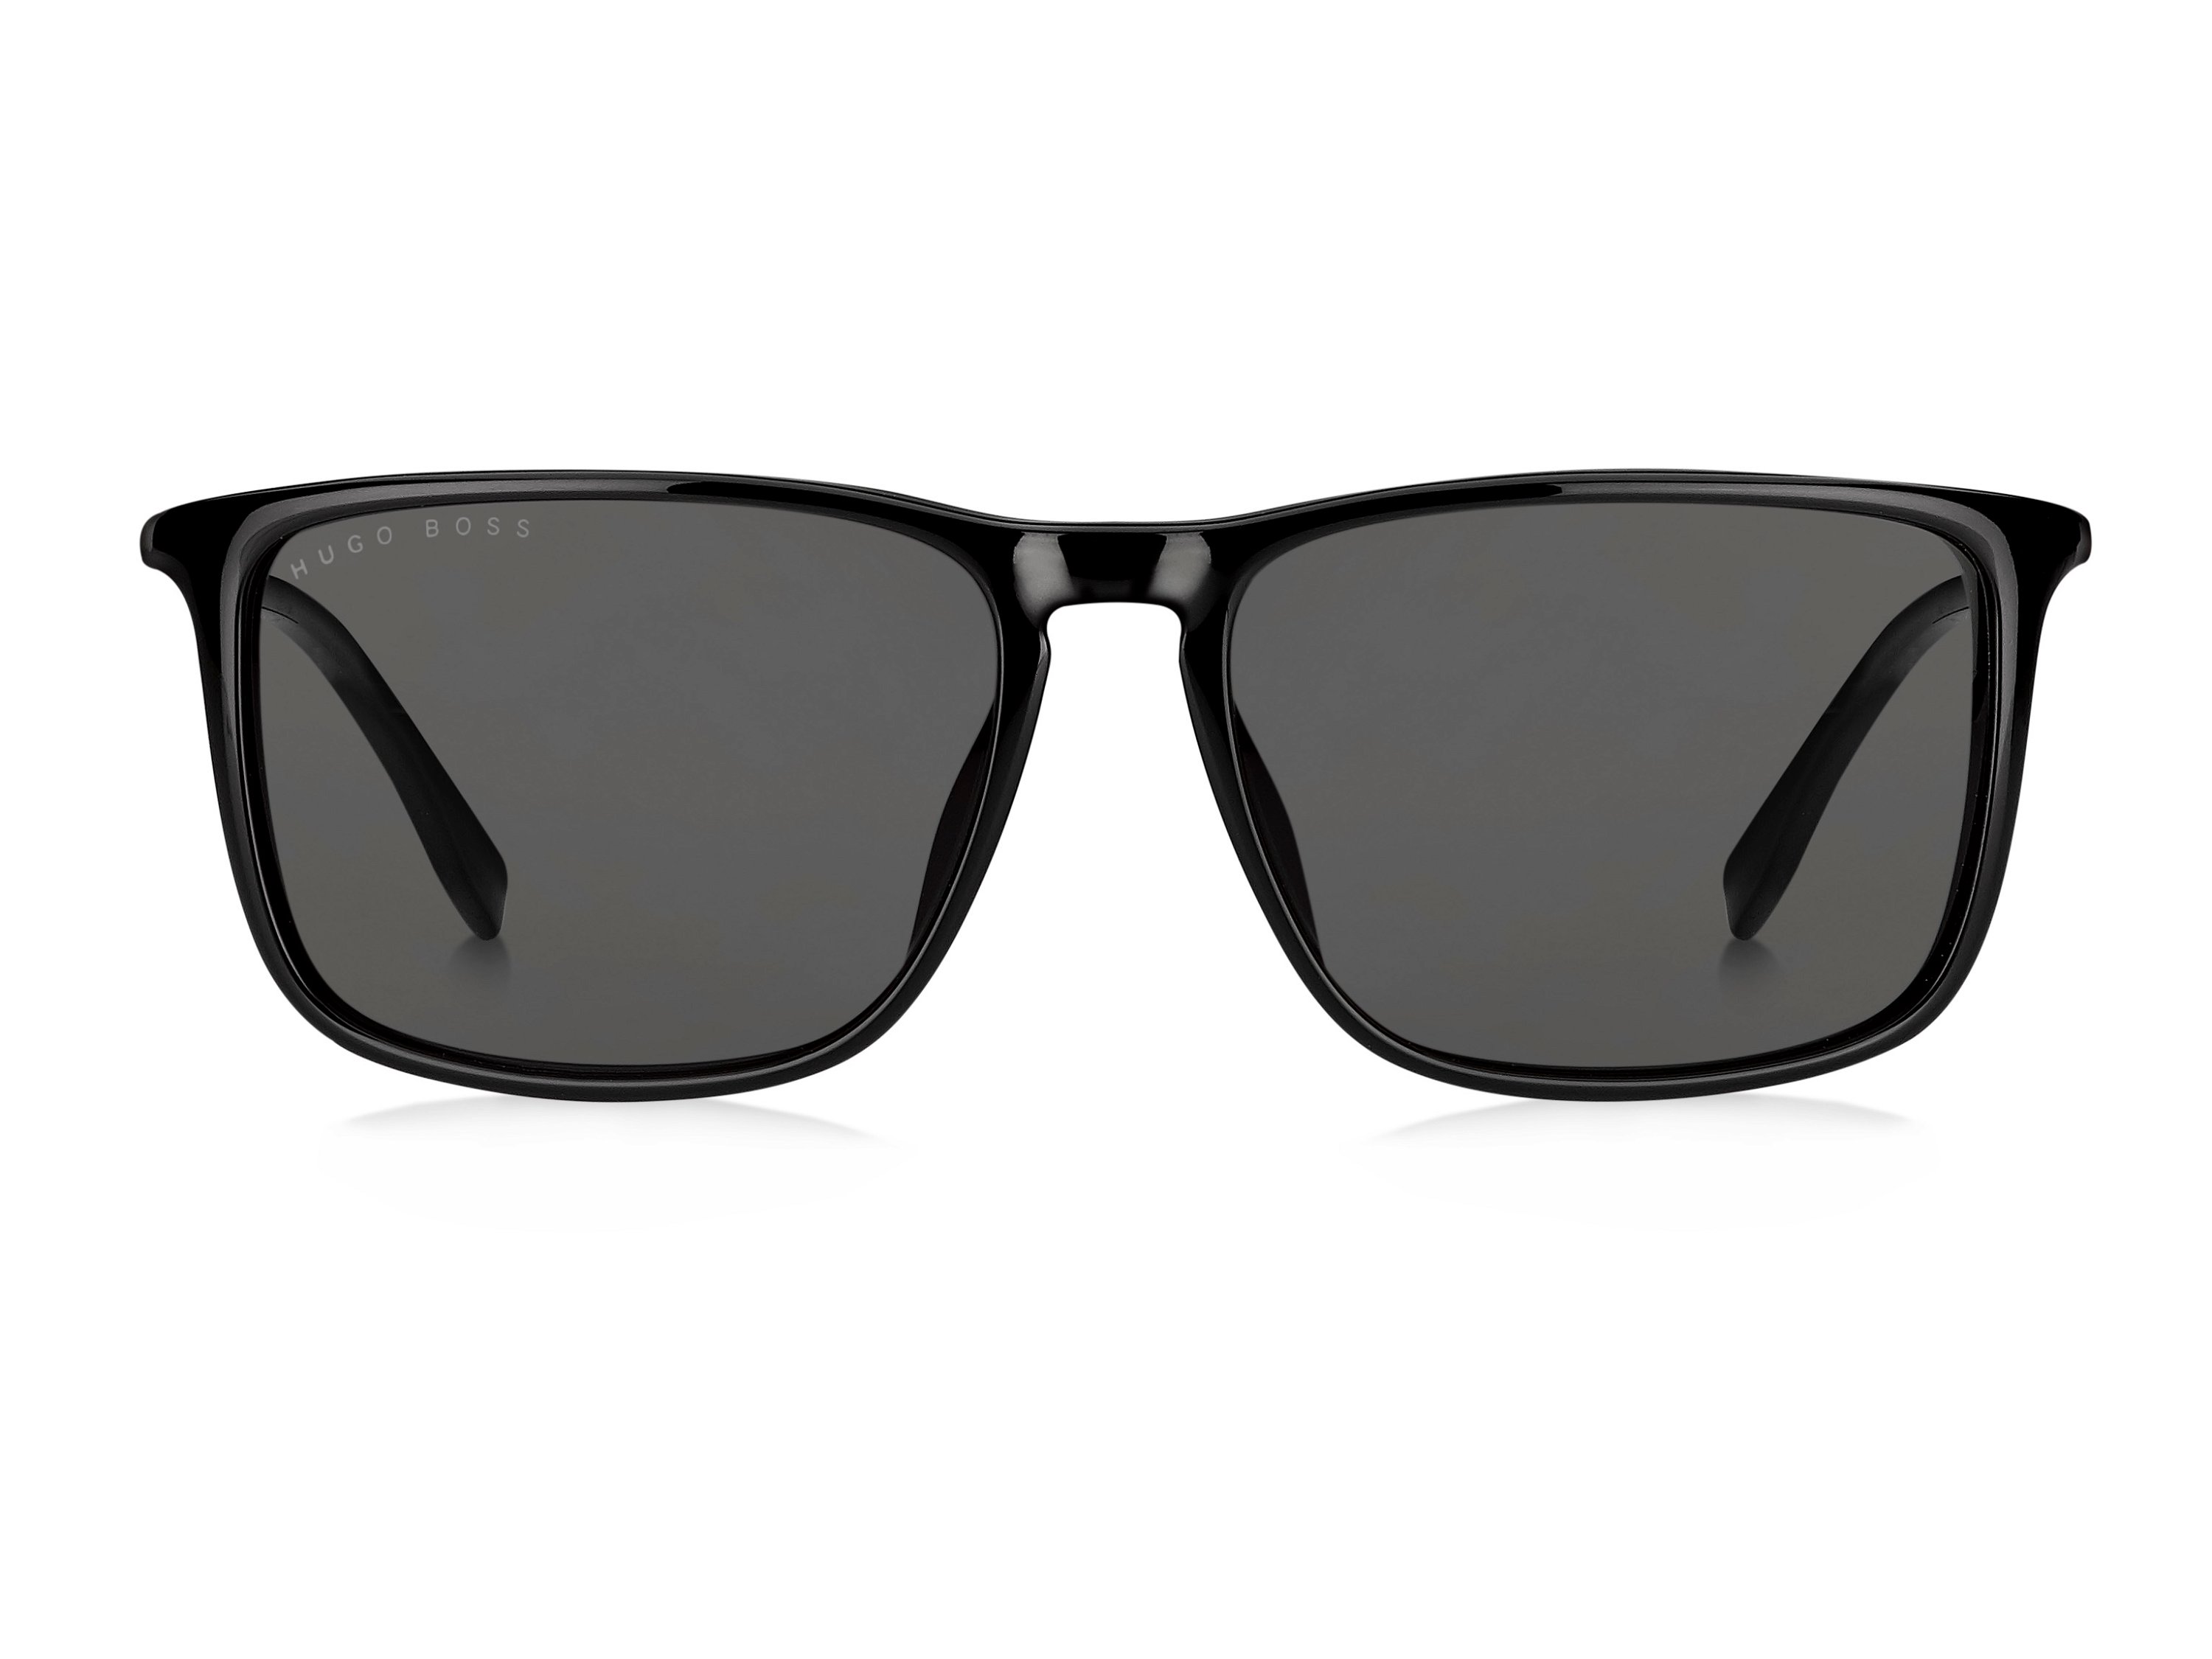 Das Bild zeigt die Sonnenbrille 0665/S/IT 2M2 von der Marke Boss in schwarz.